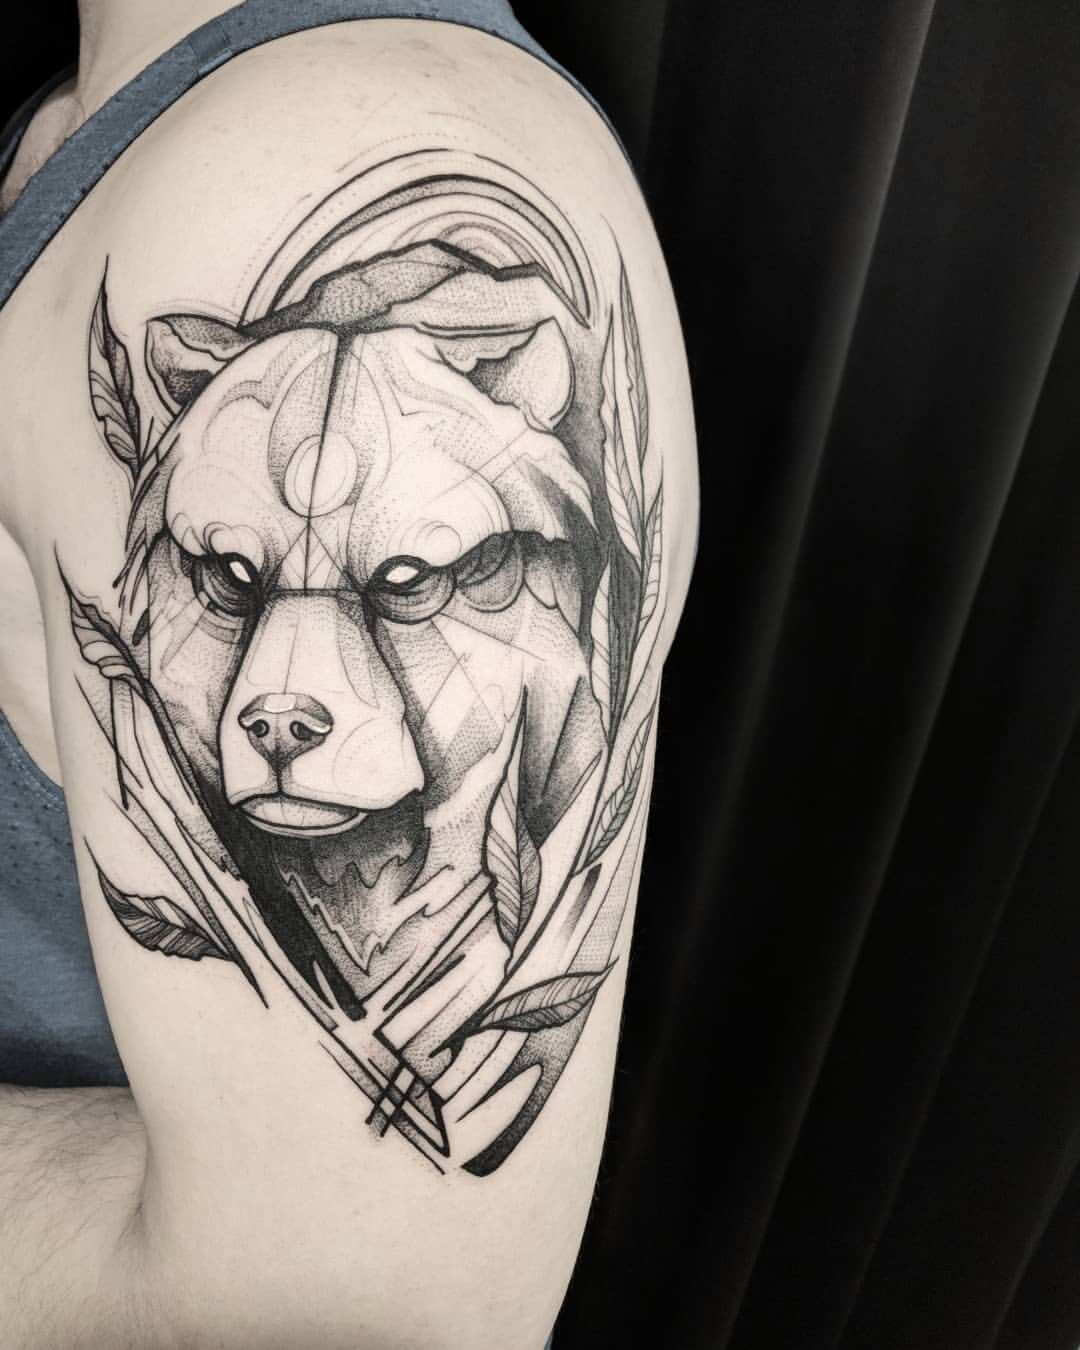 Bear and warriors tattoo tattoo idea | TattoosAI